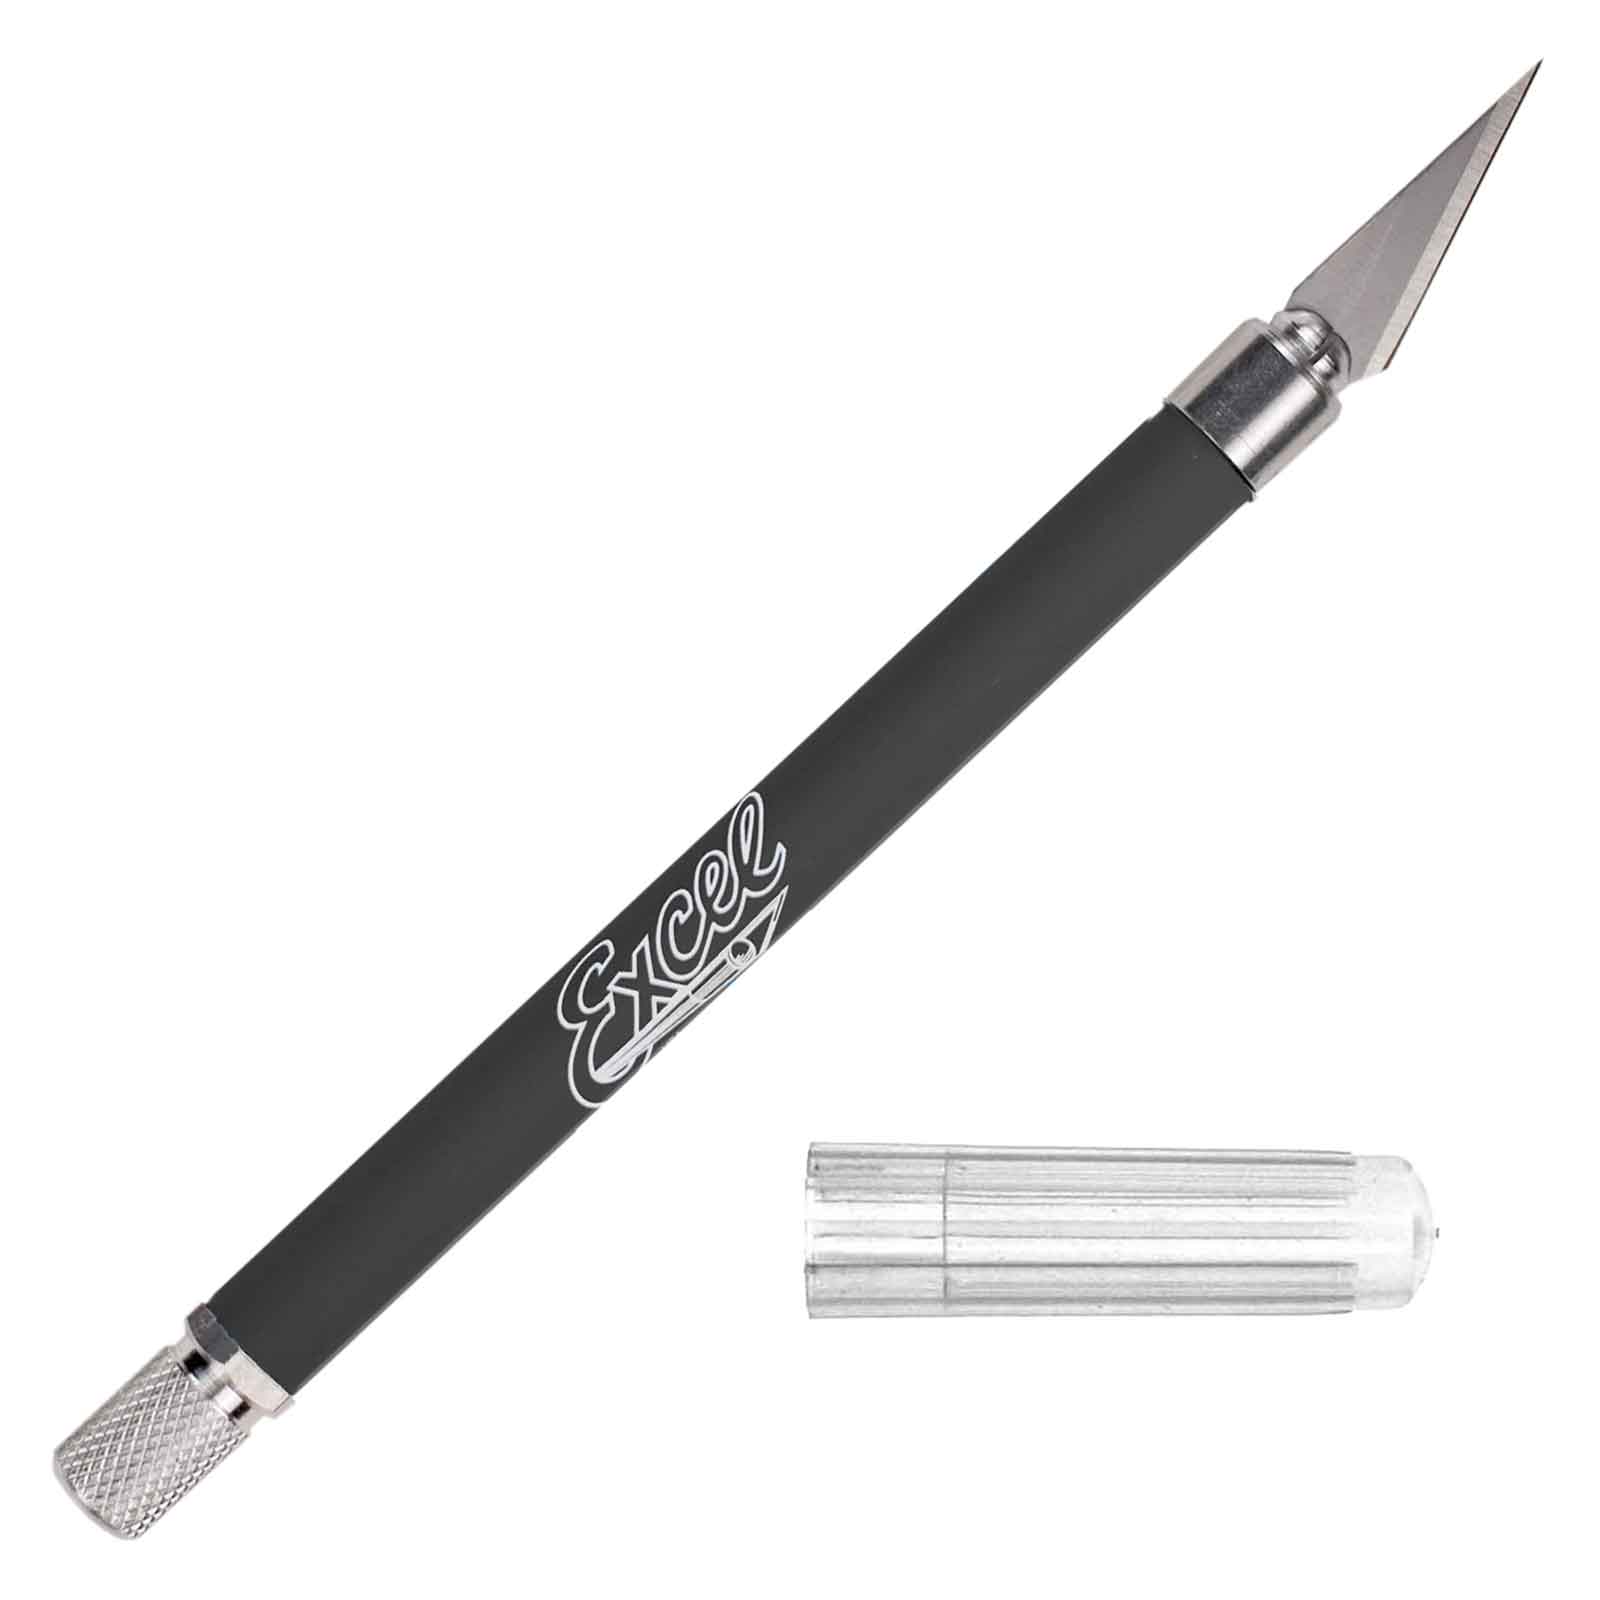 Excel K18 BLACK Soft Grip Knife USA - 16020